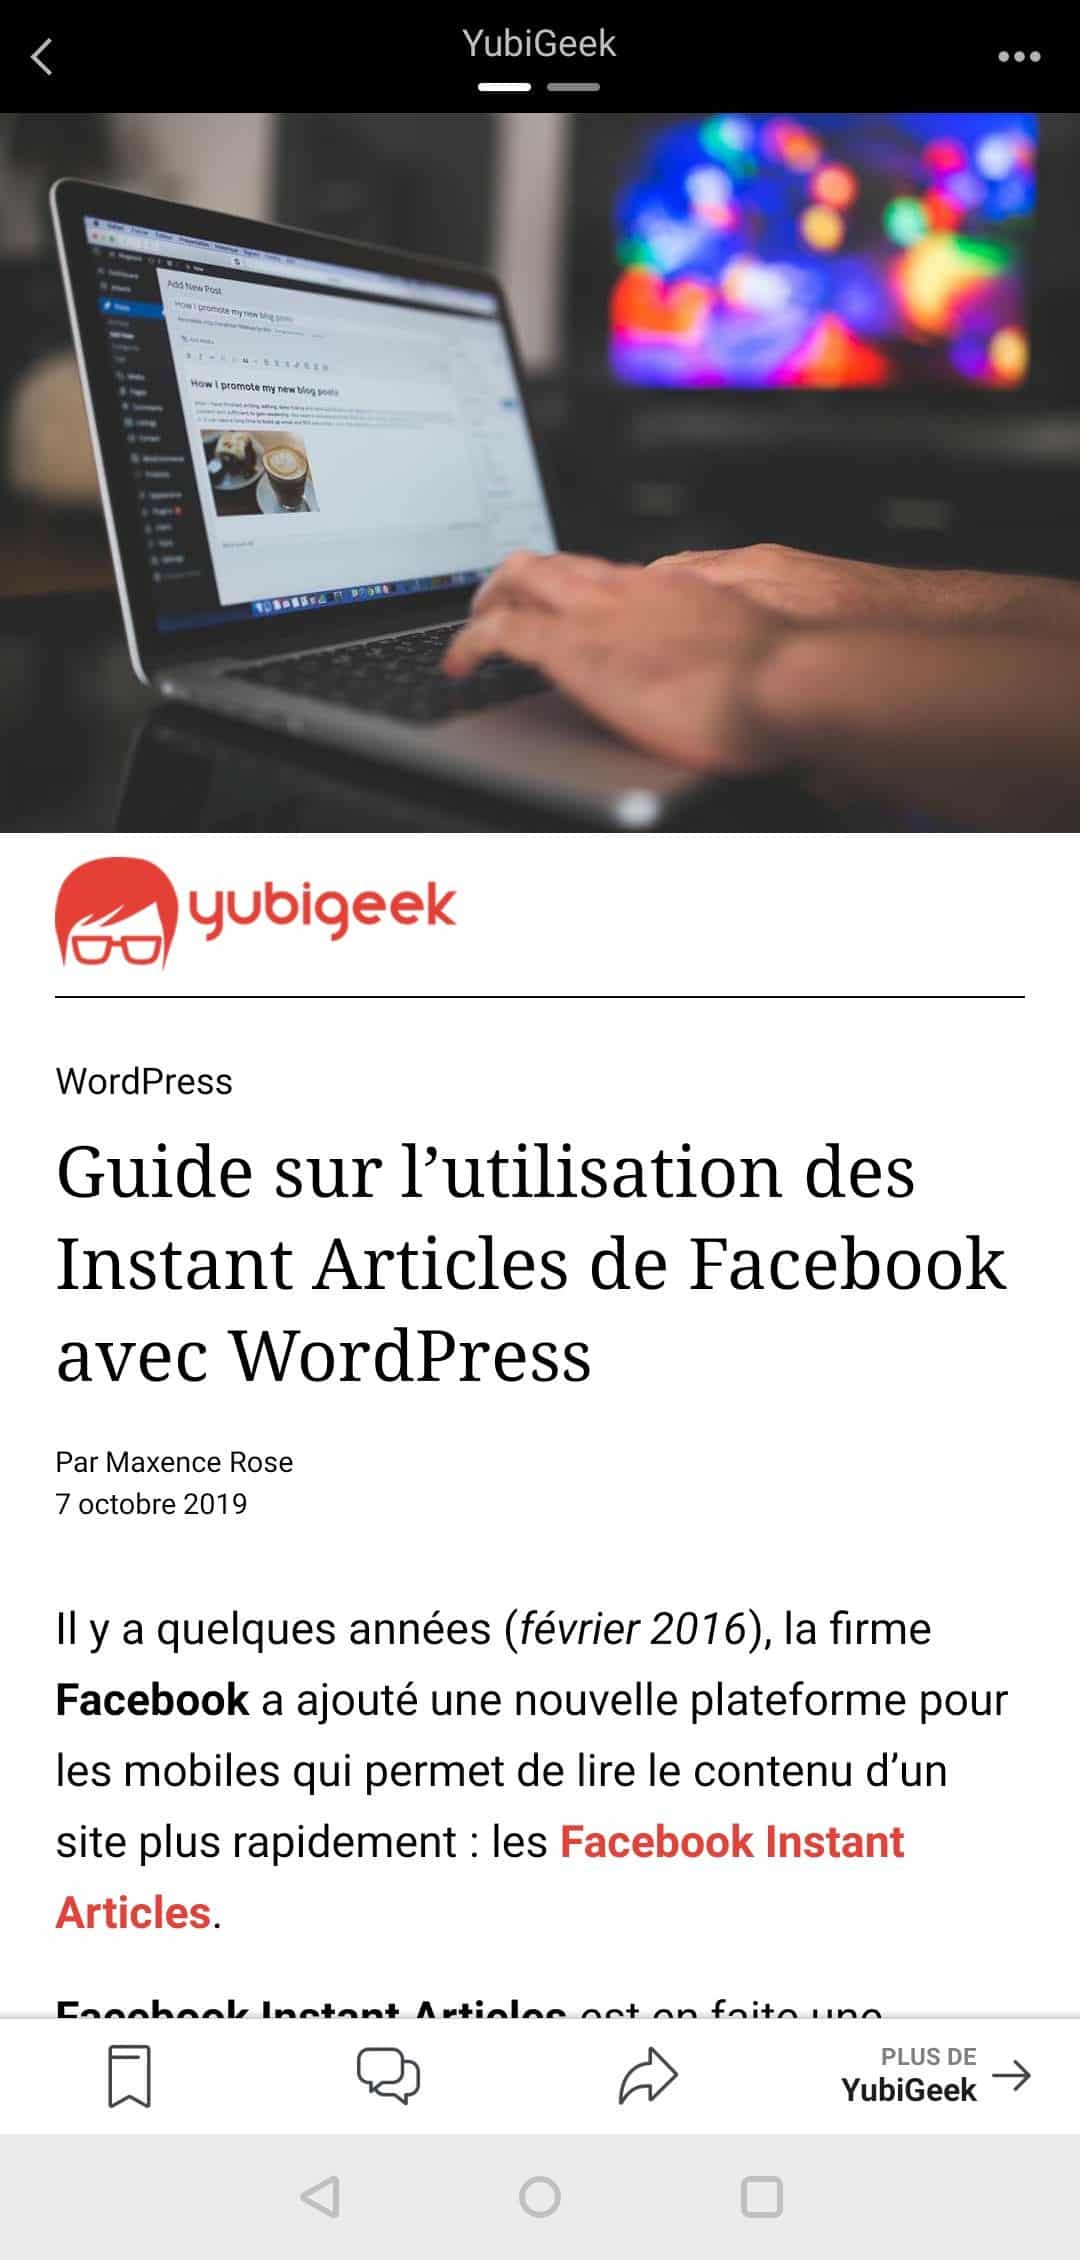 Guide sur l’utilisation des Instant Articles de Facebook avec WordPress